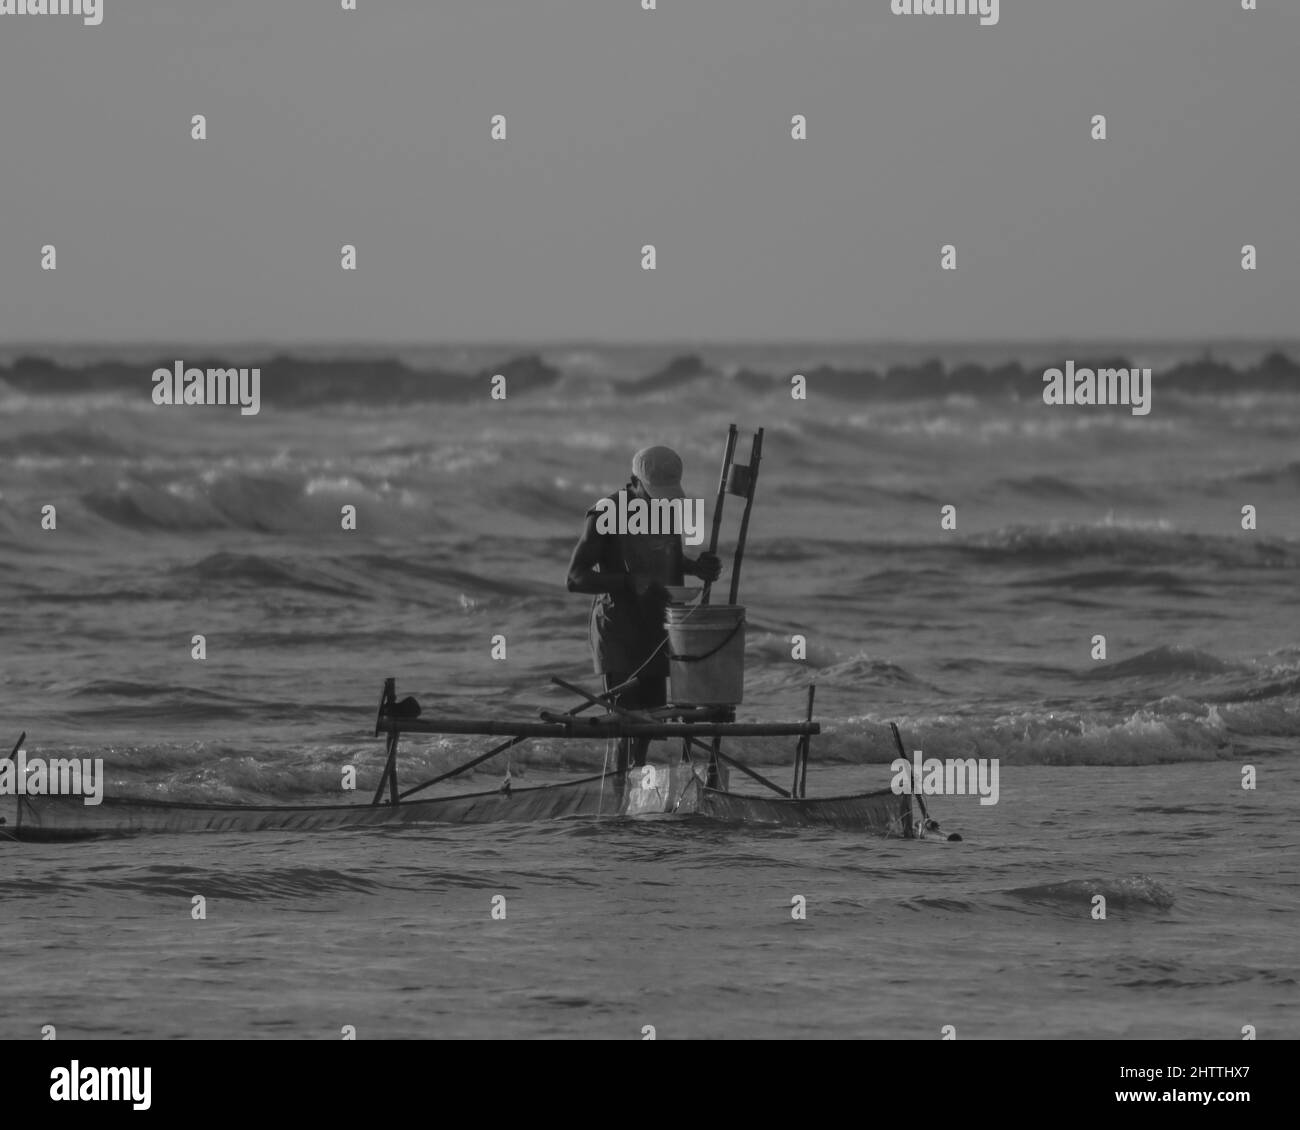 Photo noir et blanc d'un pêcheur qui attrape du poisson dans l'eau Banque D'Images